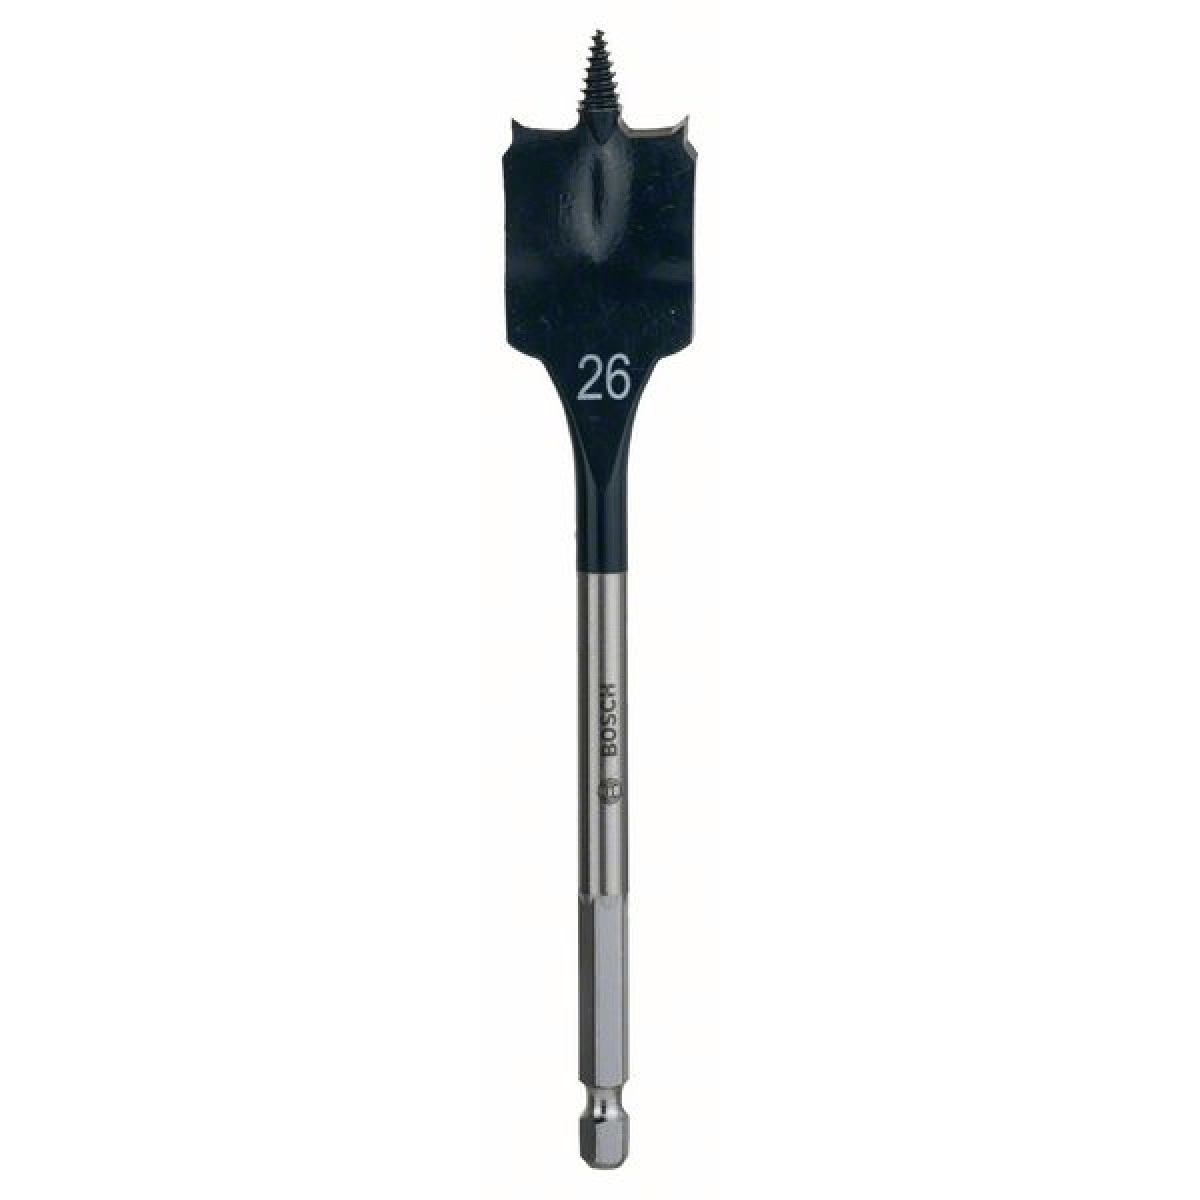 Self cut spade bit - 26mm x 116mm x 152mm